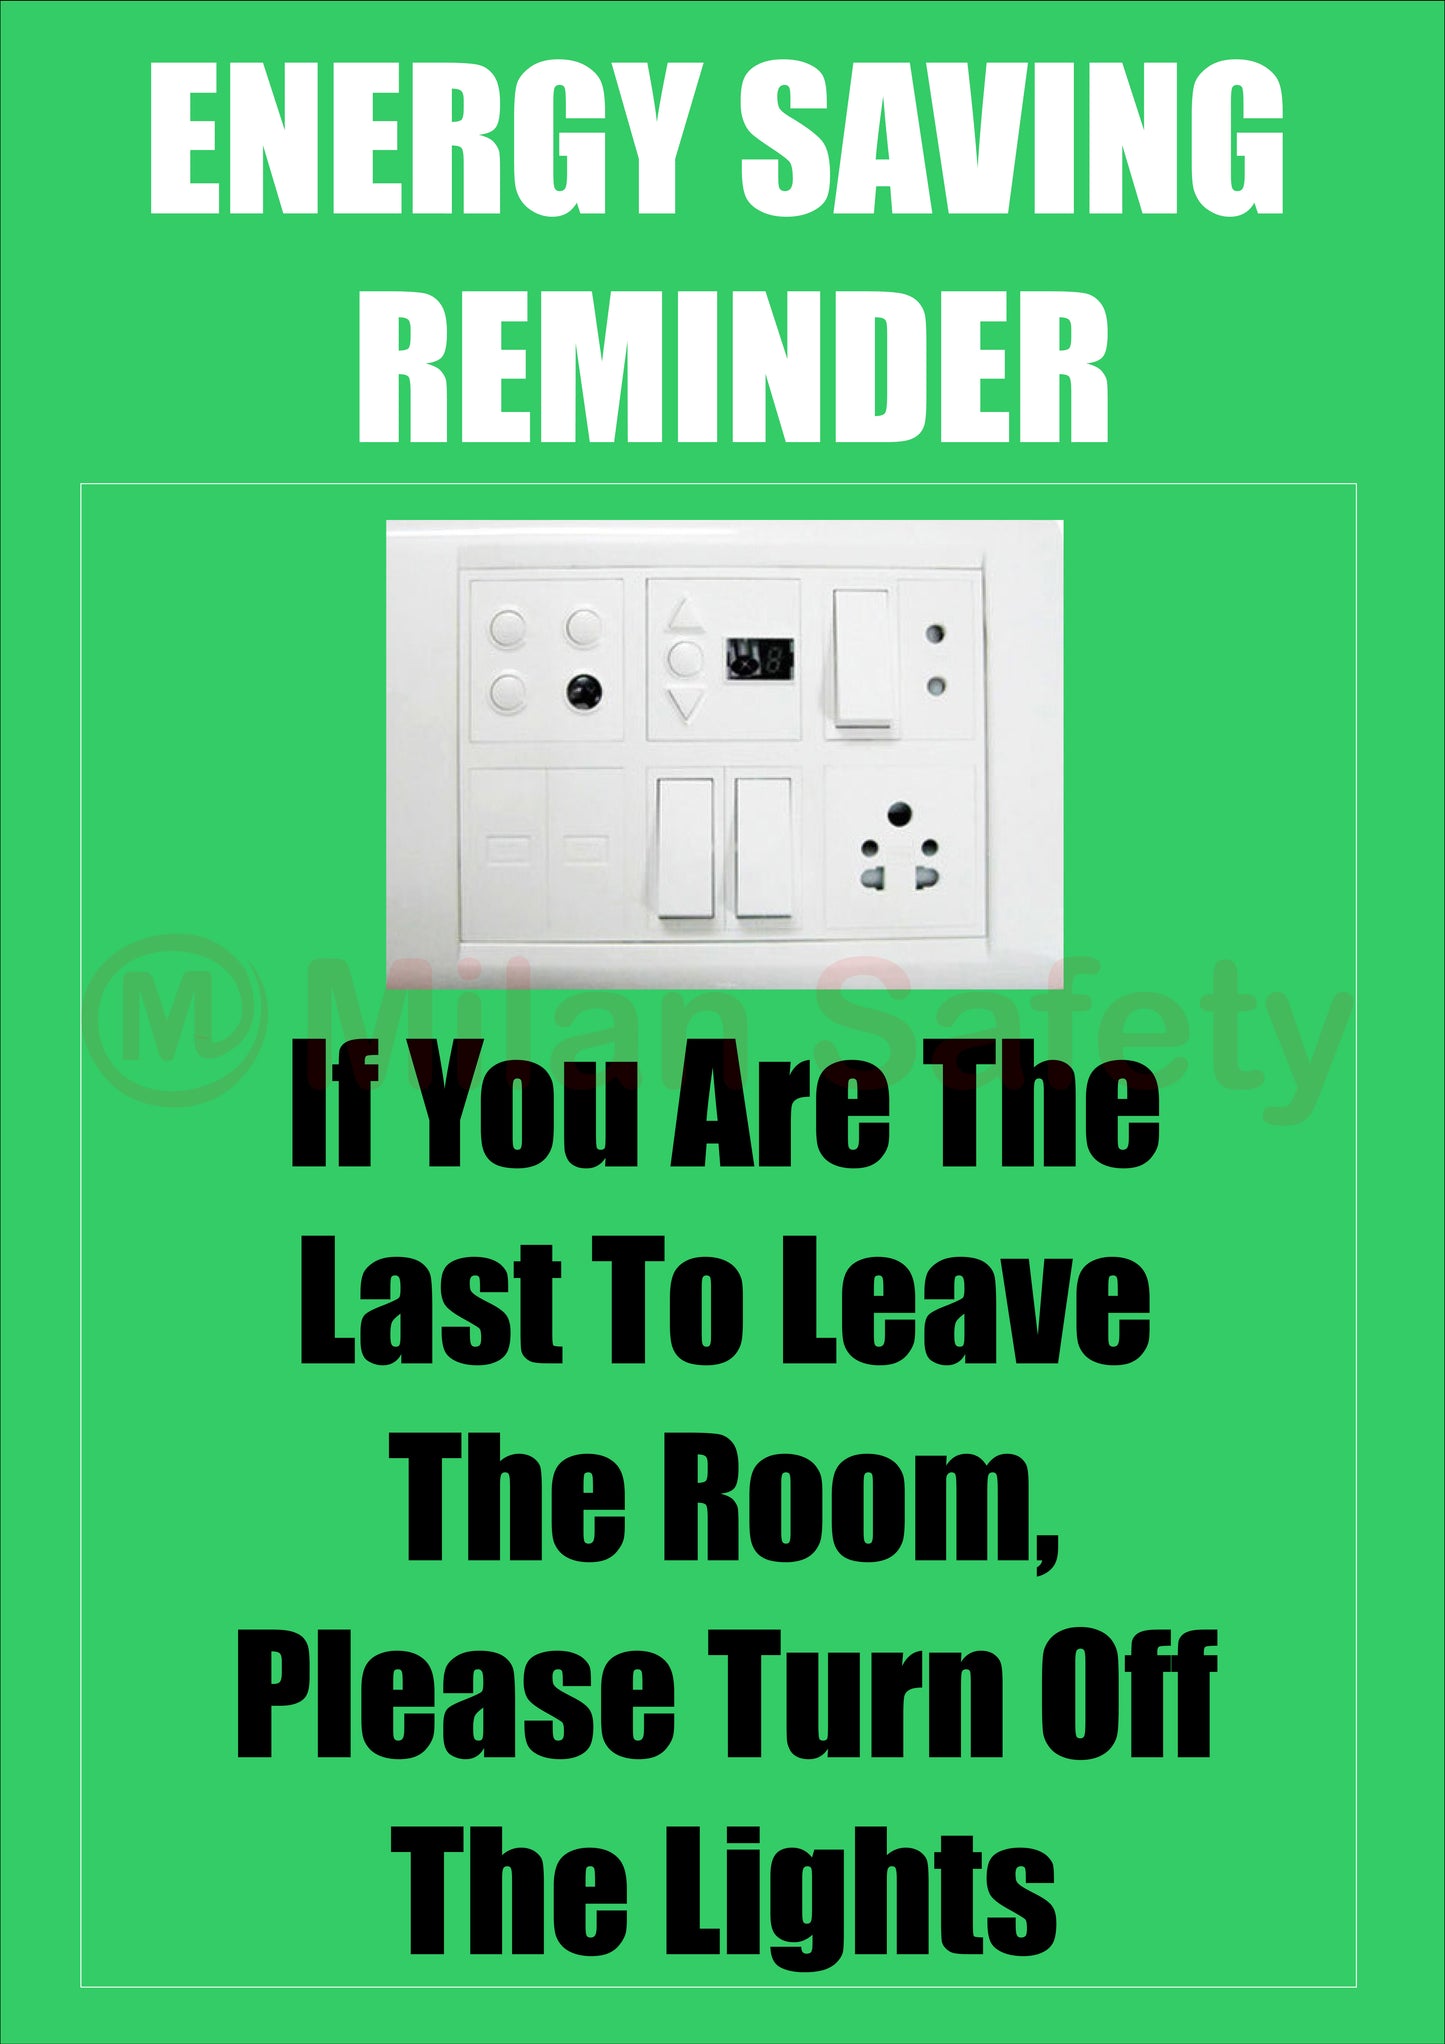 Energy saving reminder signage